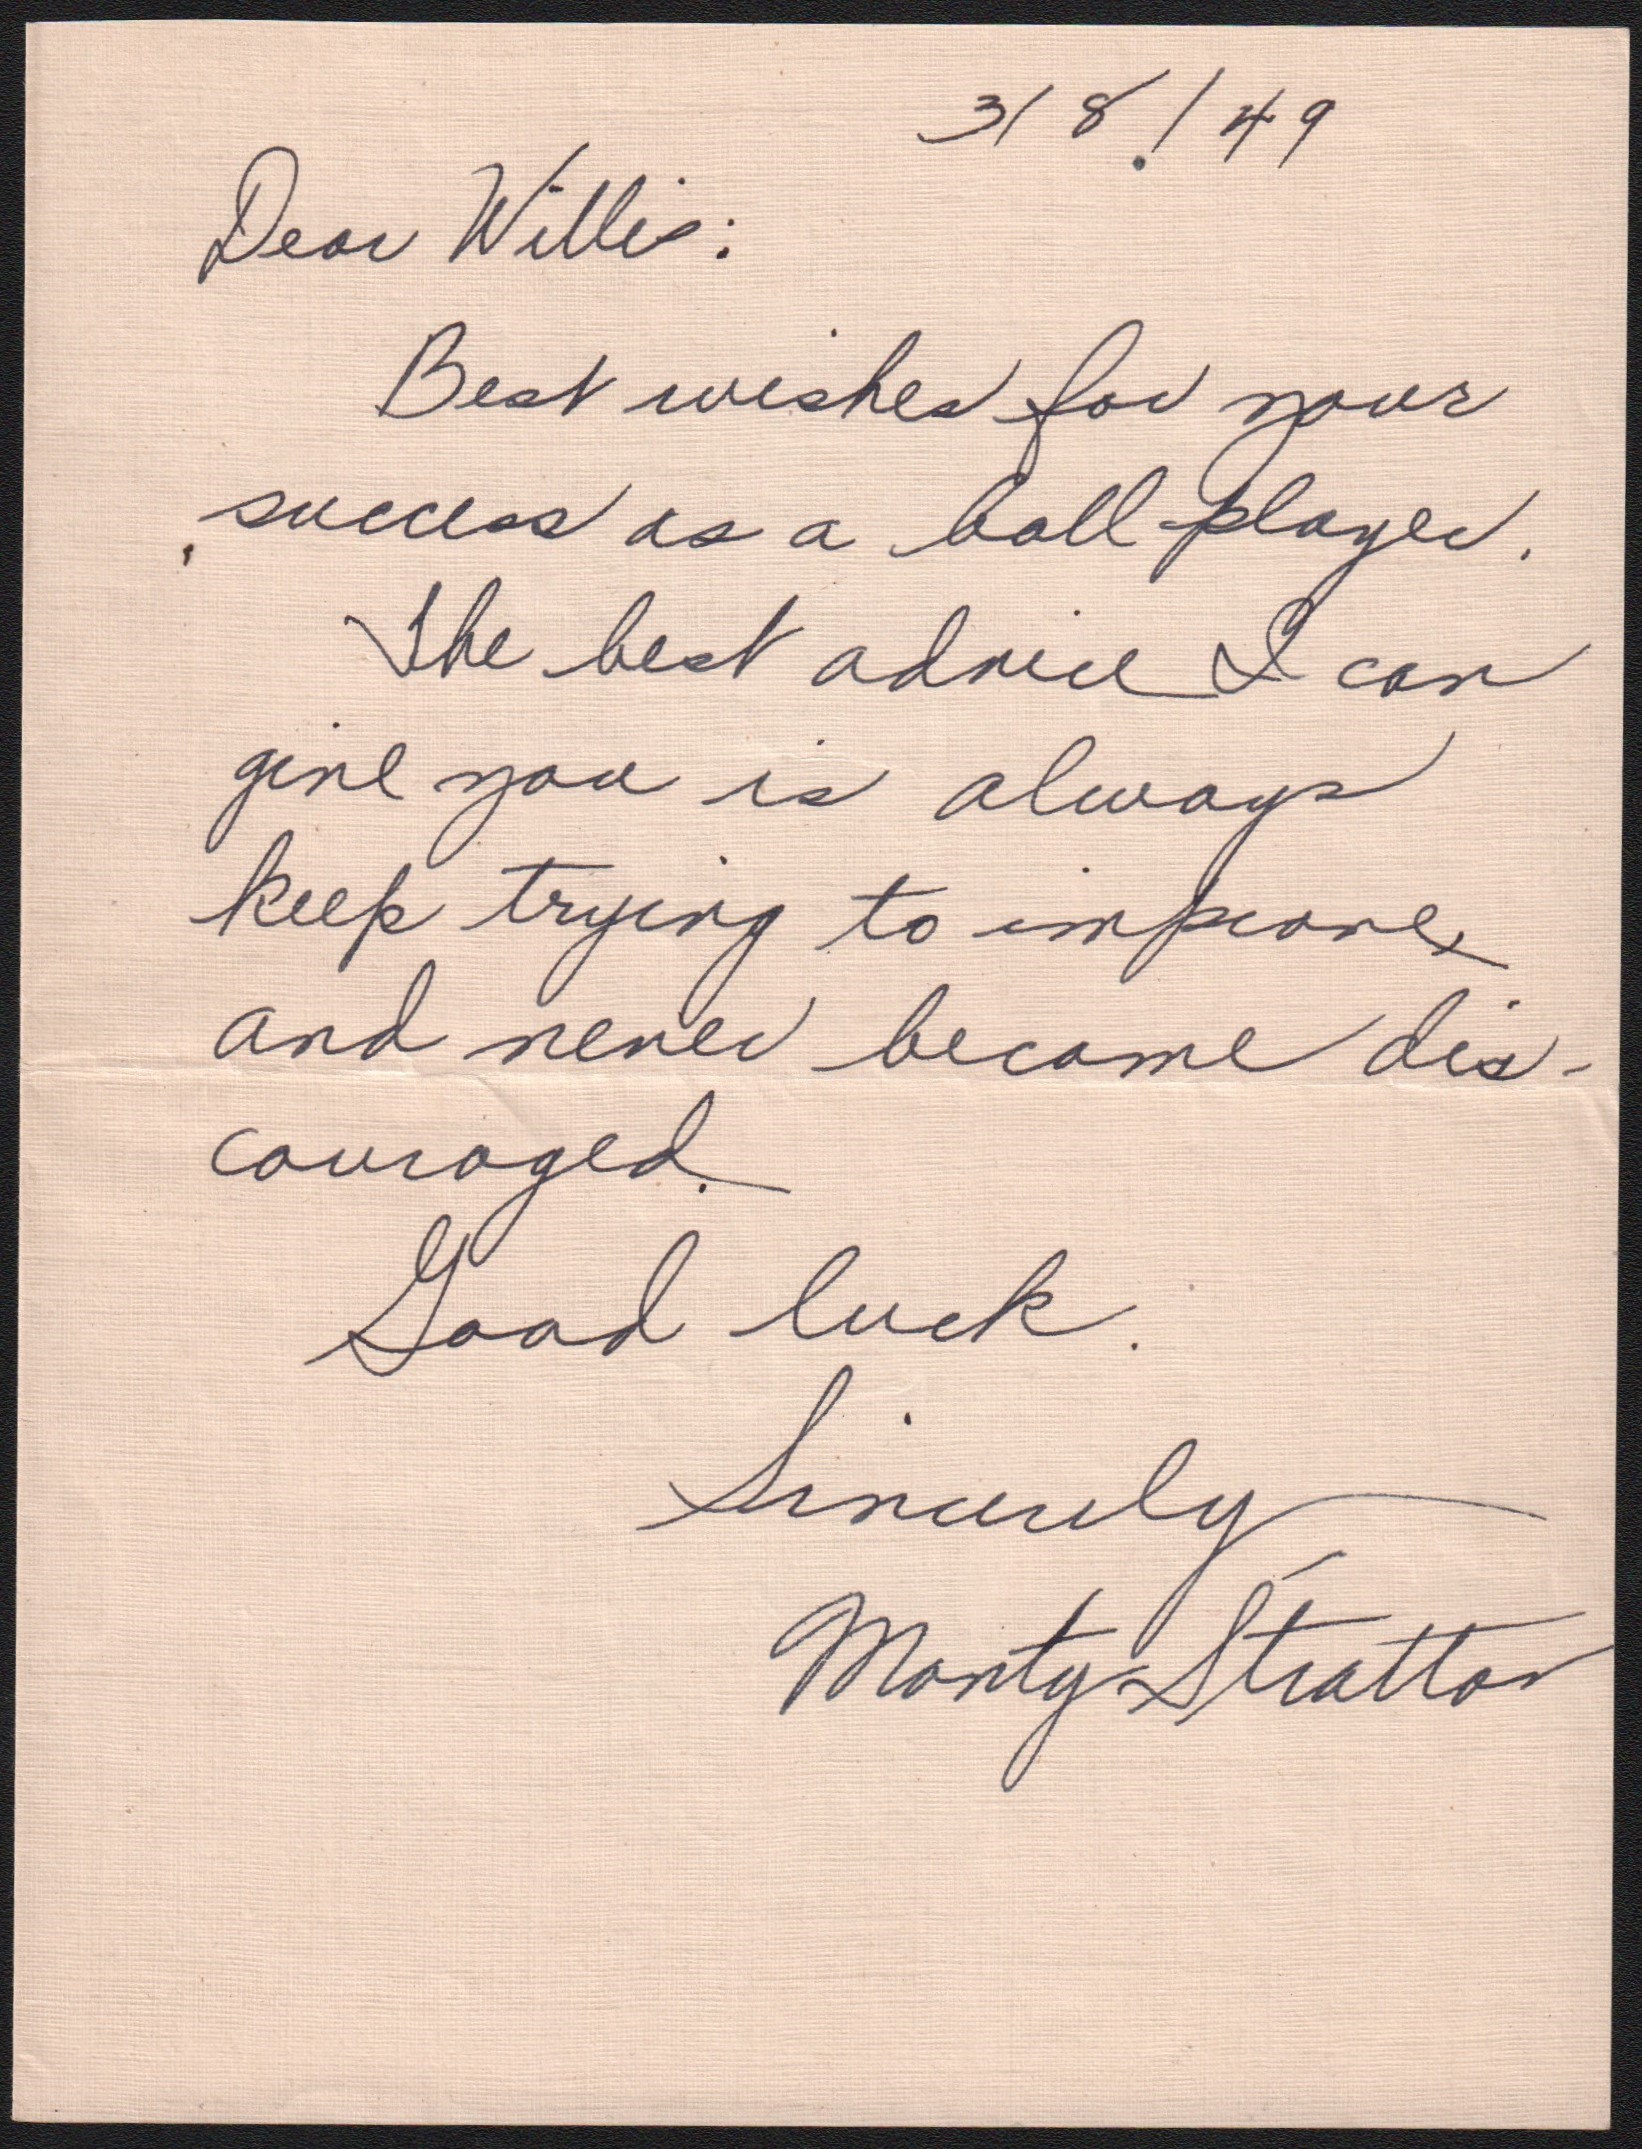 - Monty Stratton Handwritten "Advice" Letter